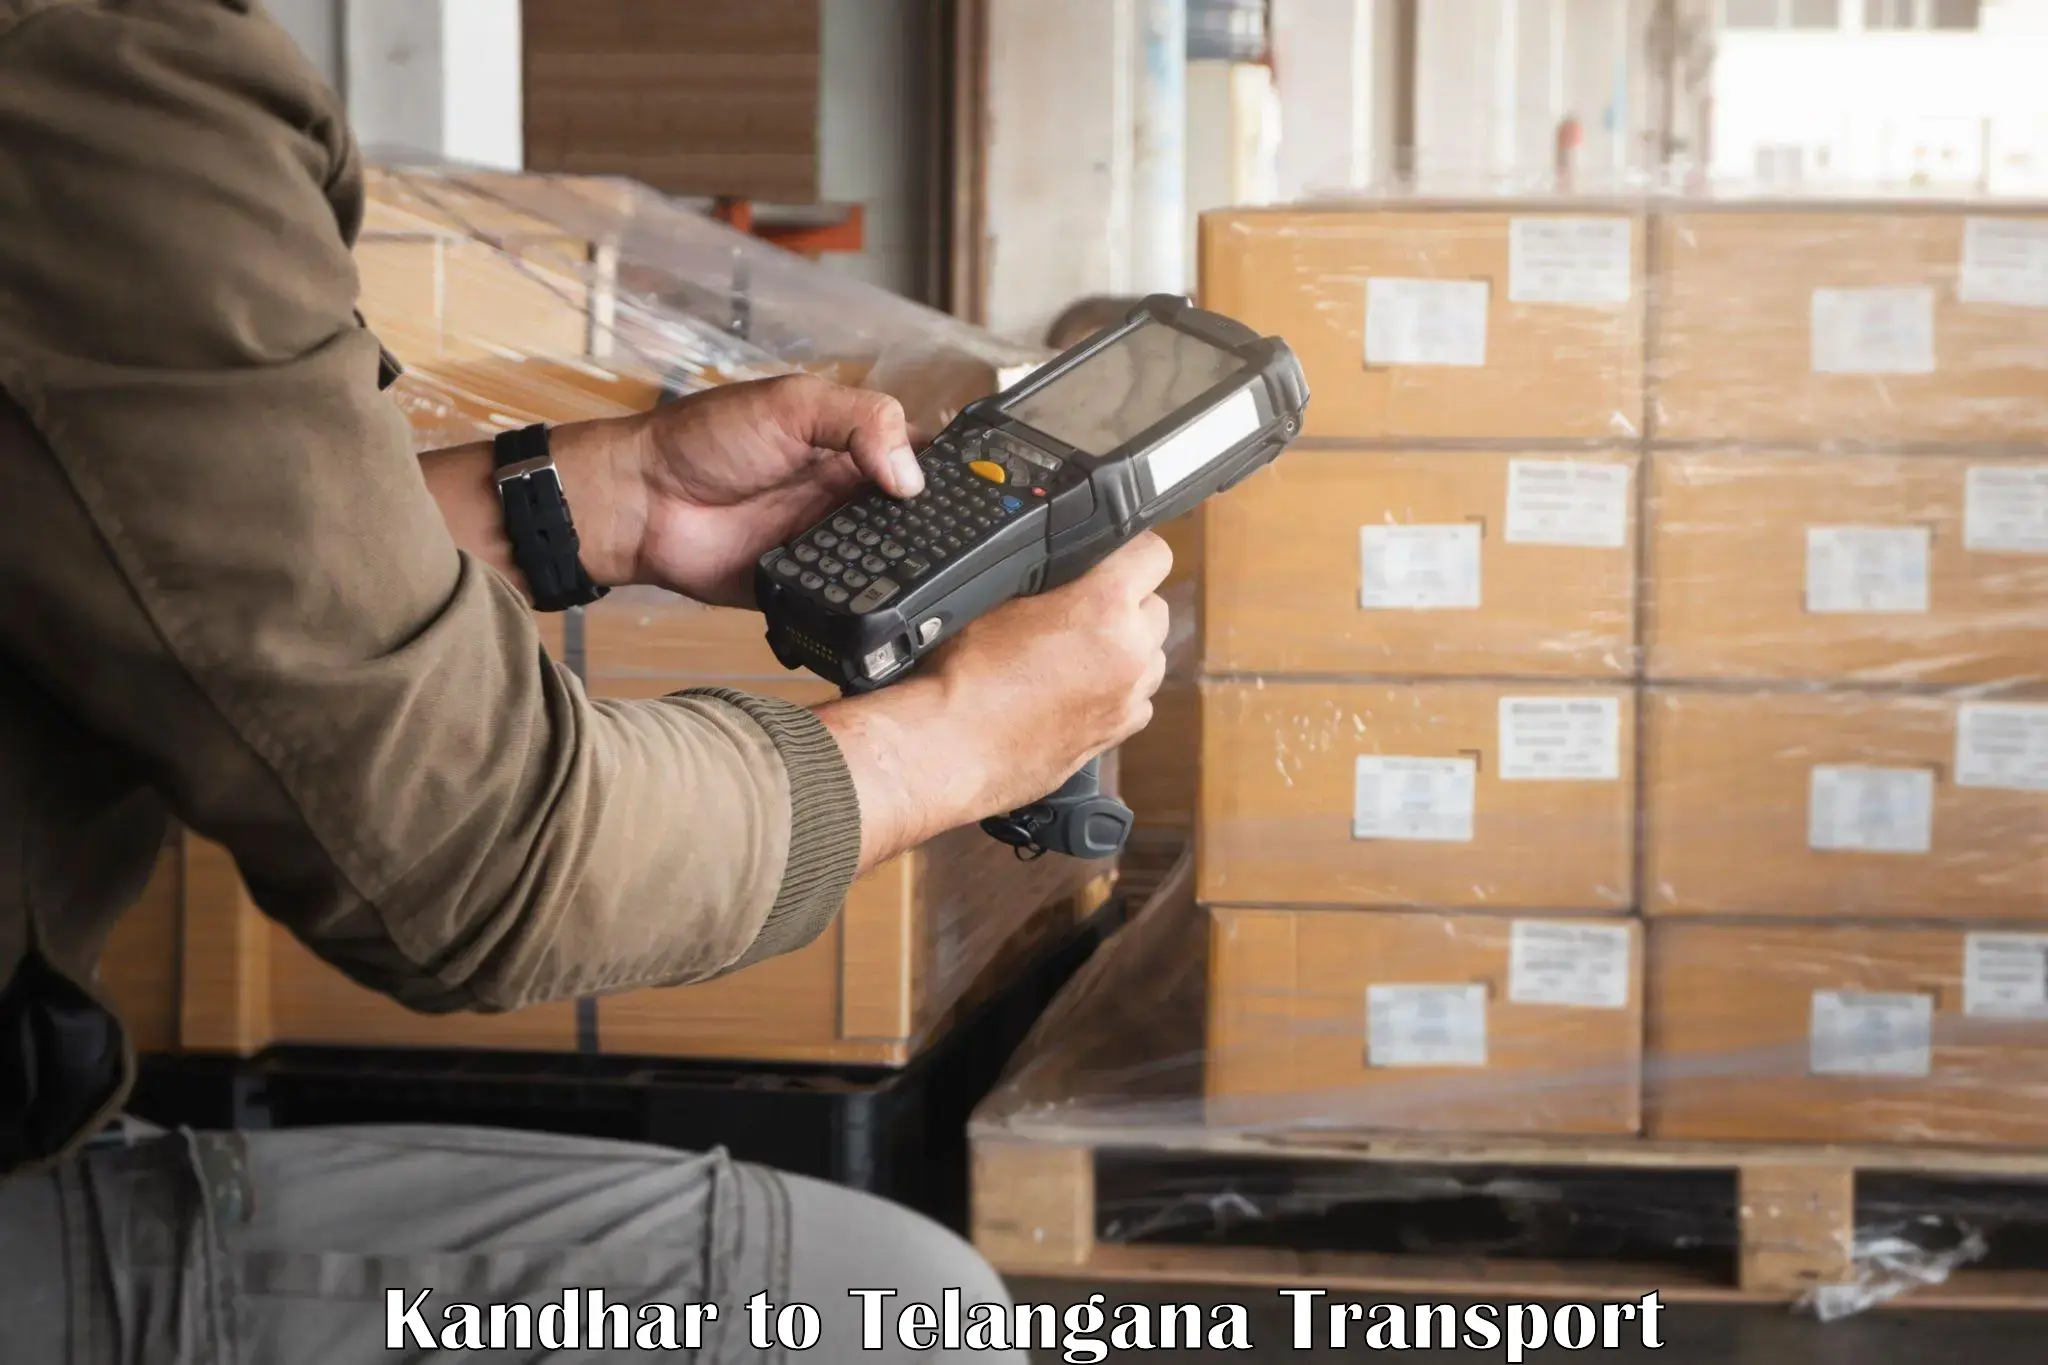 Express transport services Kandhar to Kakeshwaram